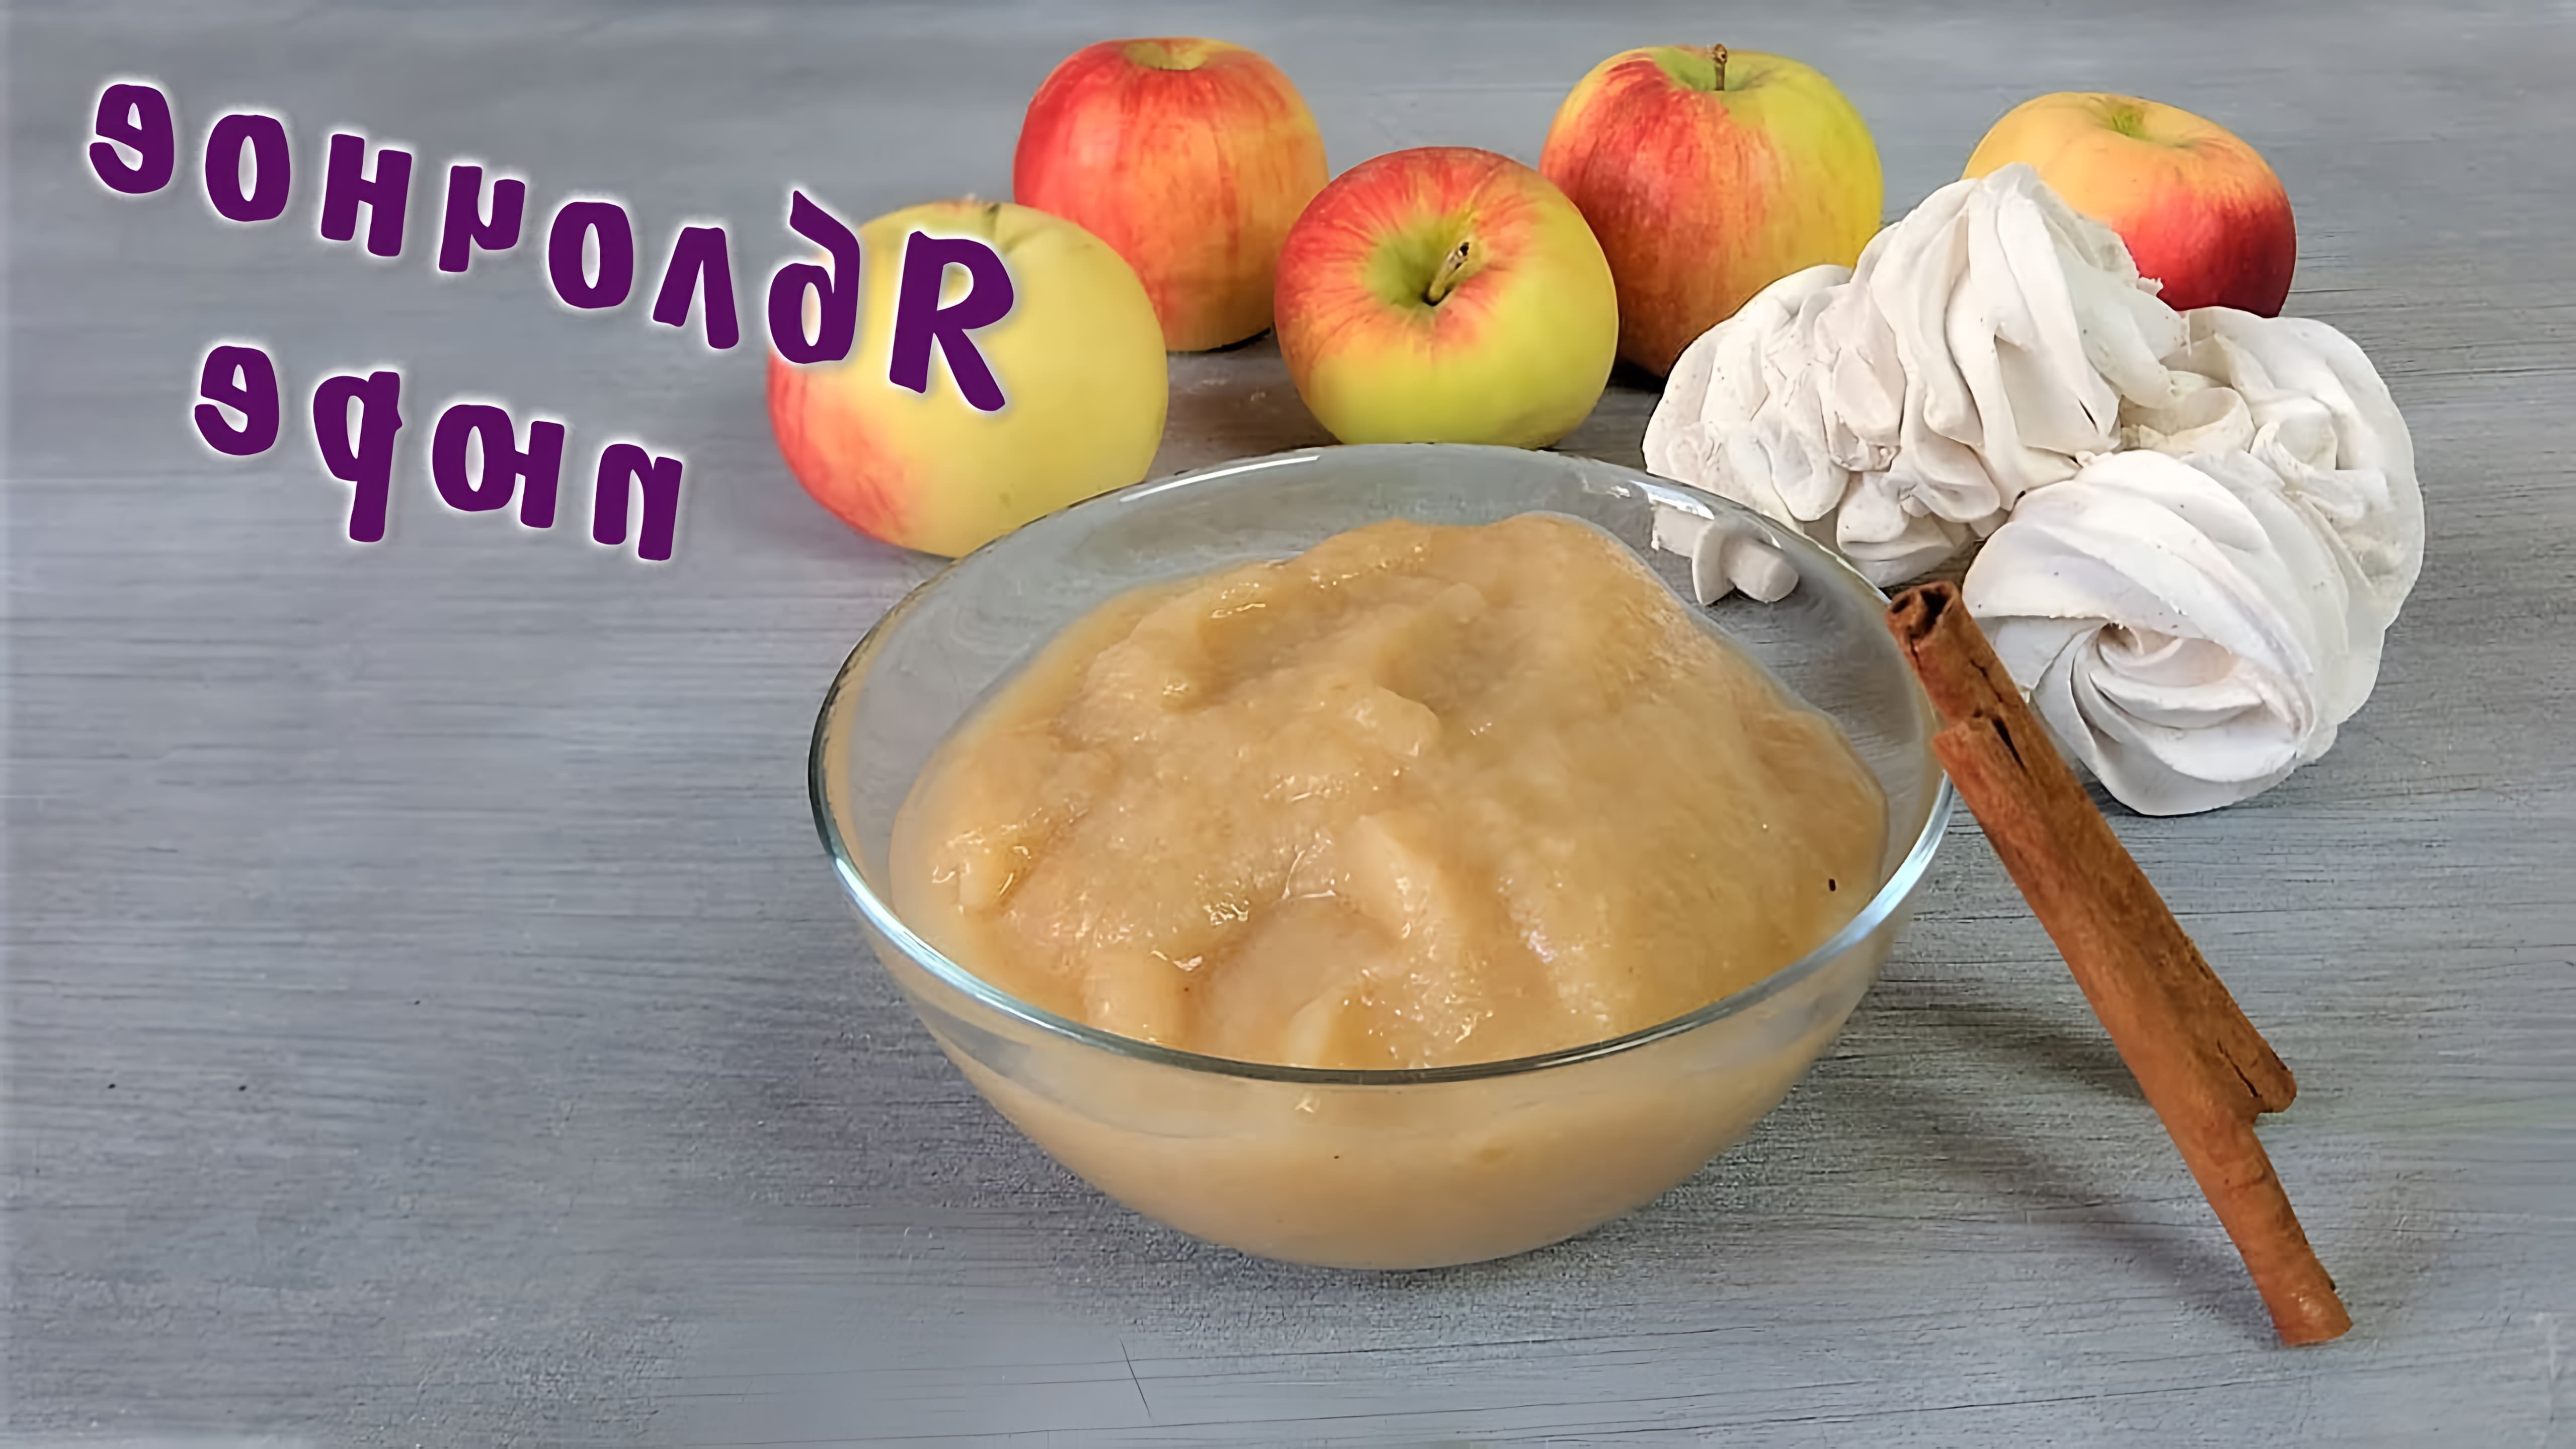 Яблочное пюре - это вкусное и полезное блюдо, которое можно приготовить в домашних условиях